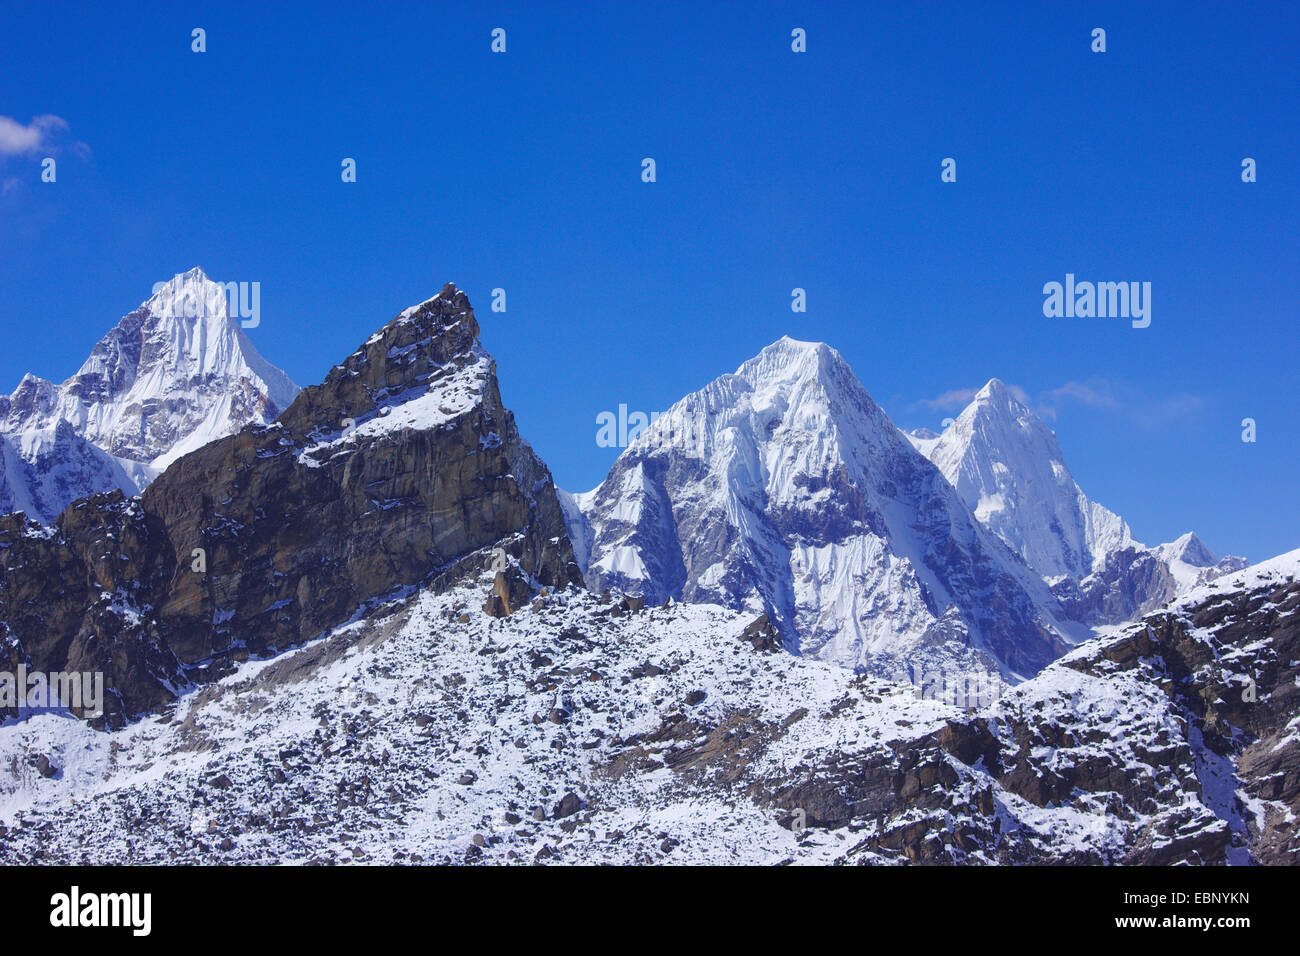 Drangnag Ri, Kang et Korob Menlungtse Rolwaling Himal () vue de Renjo La, Népal, Himalaya Banque D'Images